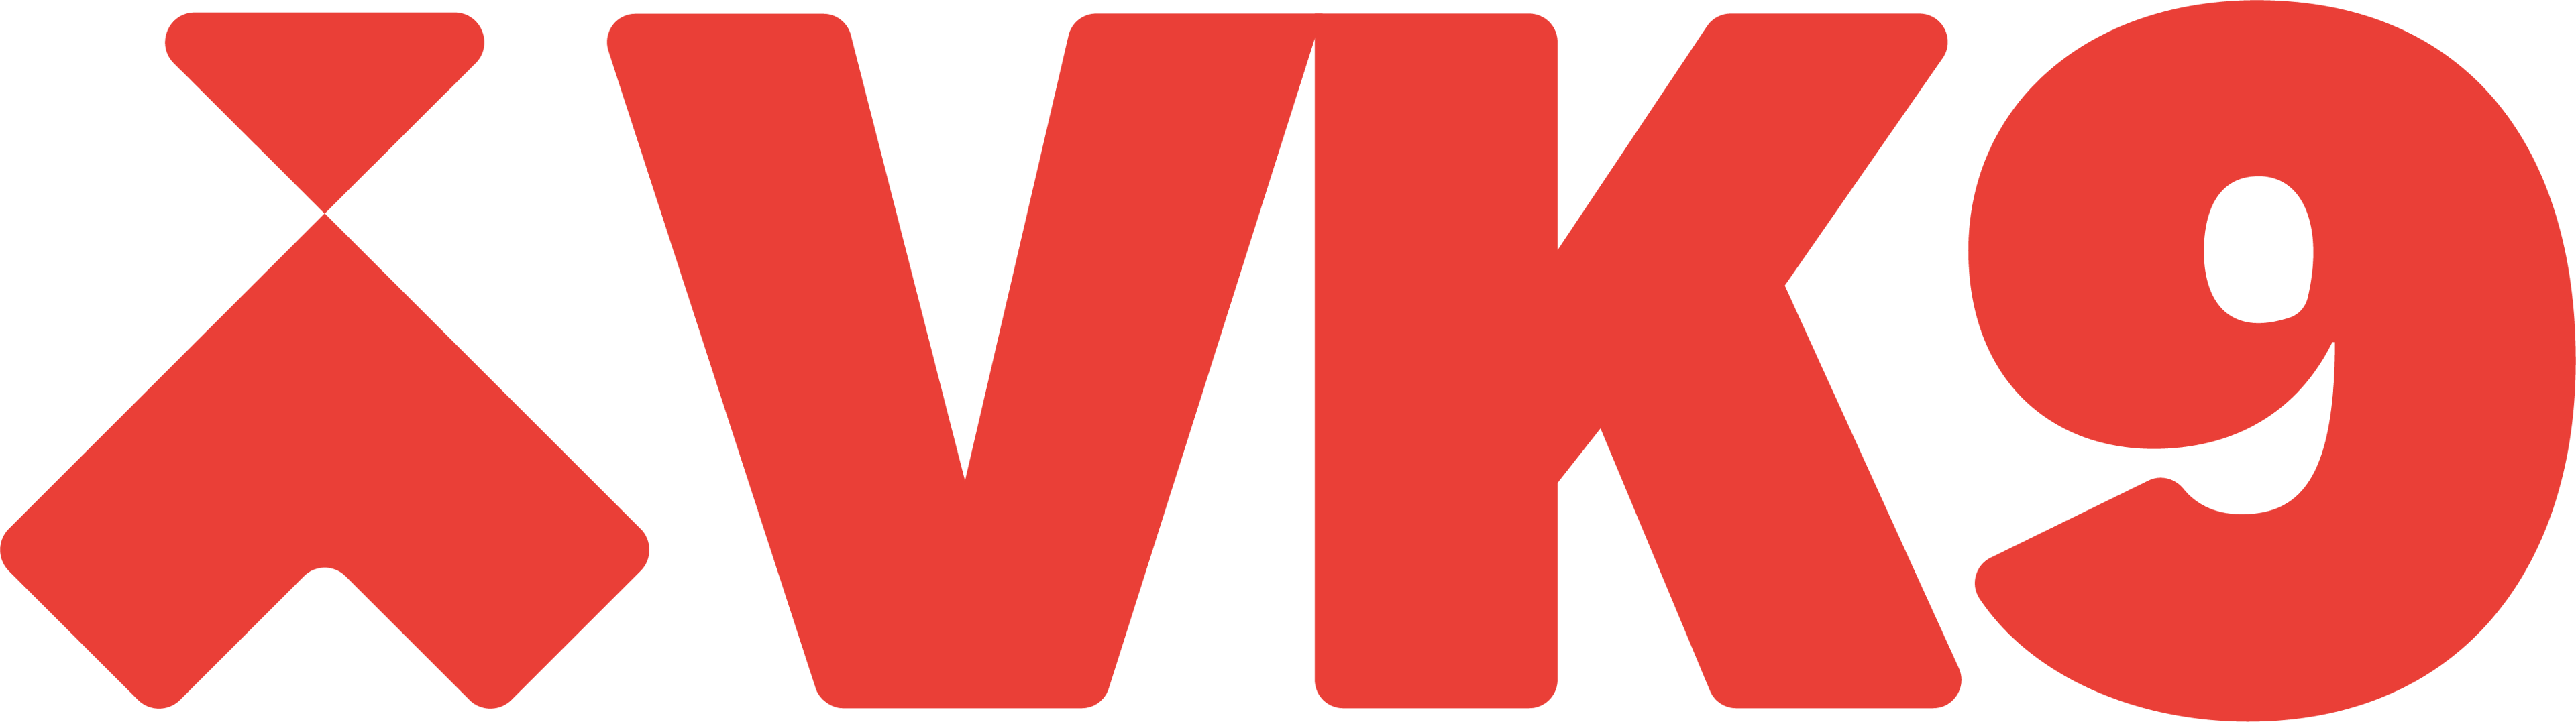 VK9 logo